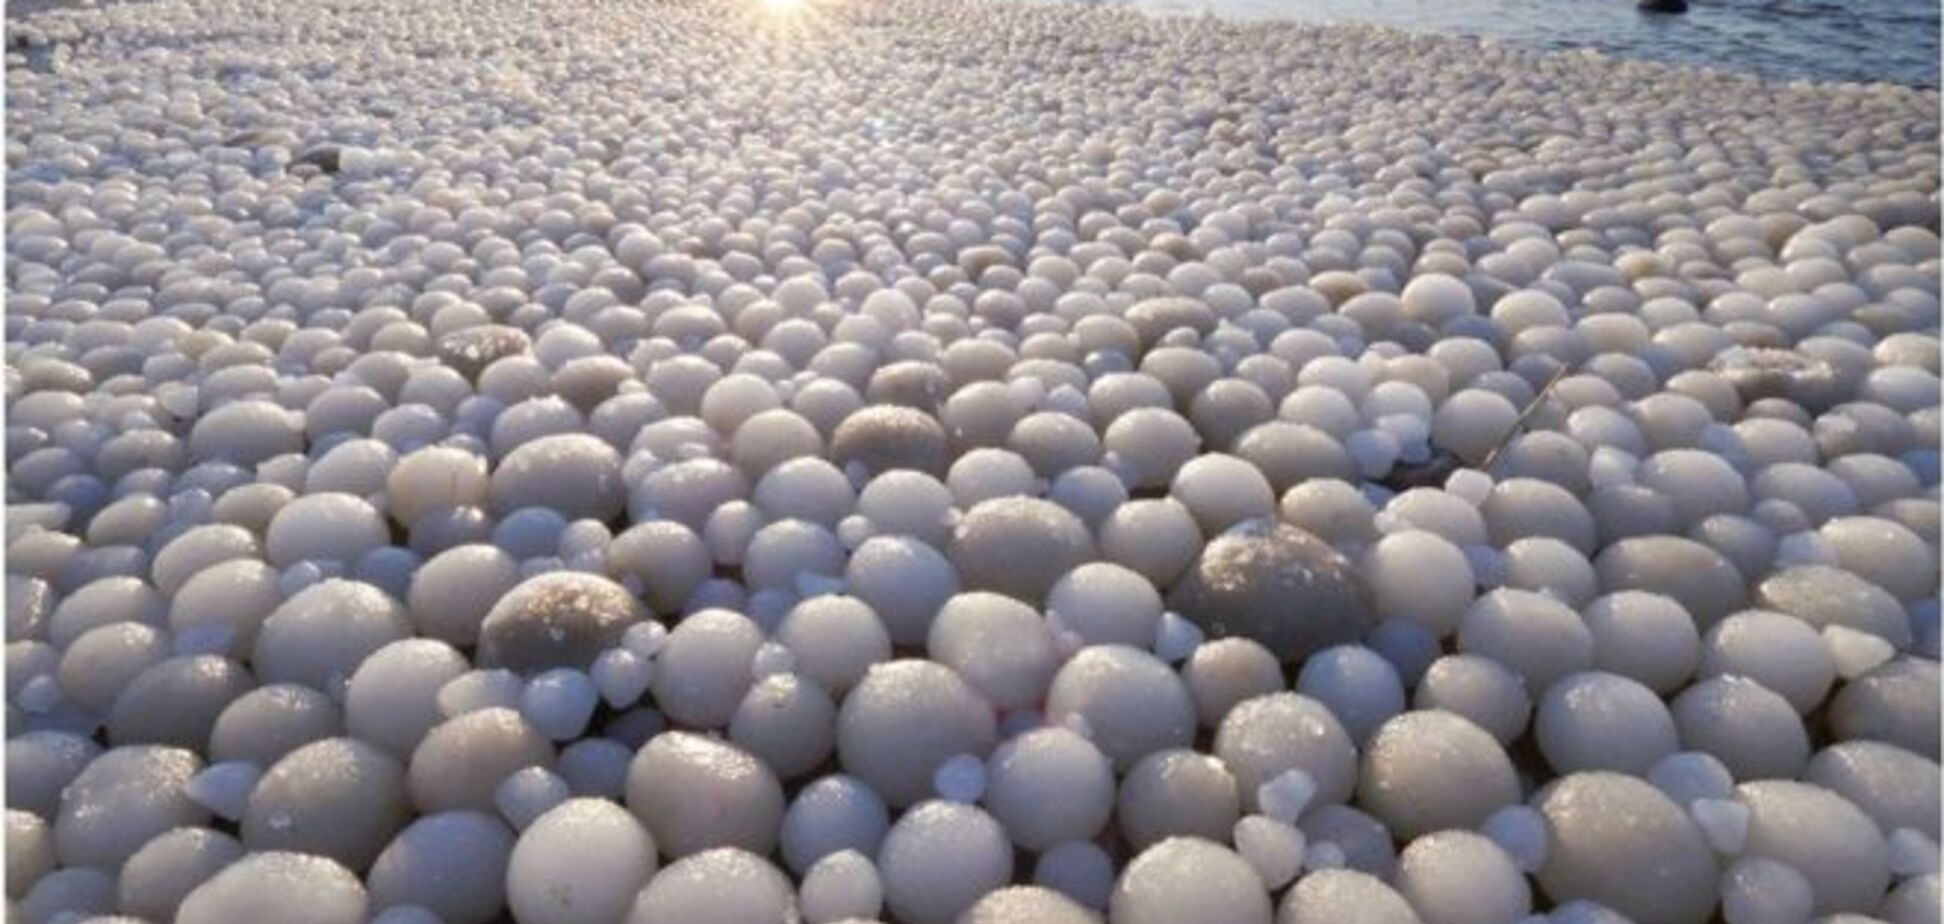 Пляж в Финляндии покрыли гигантские 'ледяные яйца': впечатляющие фото